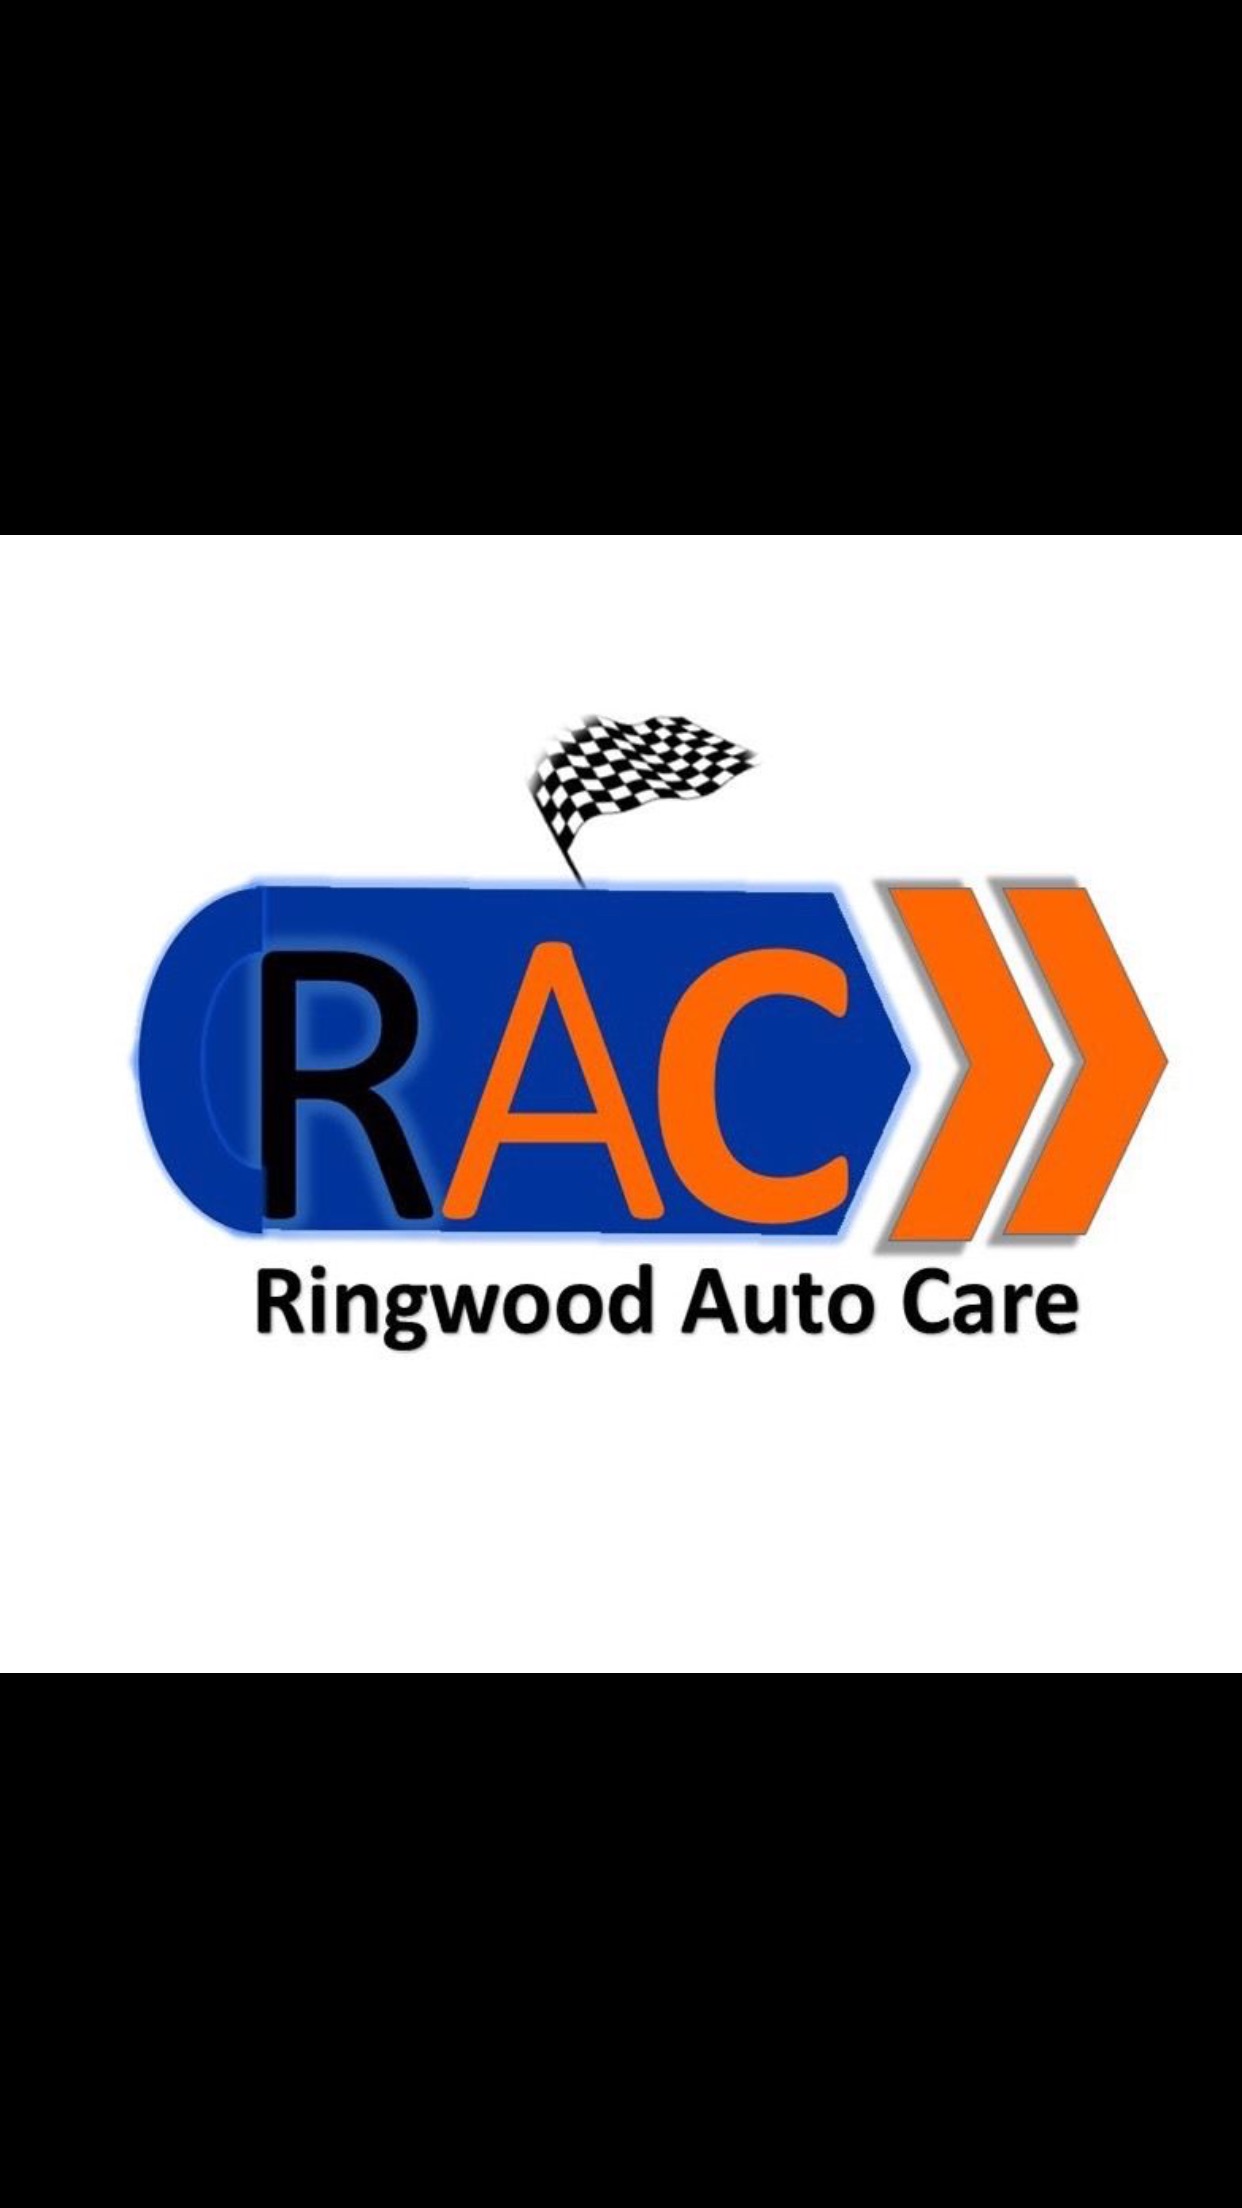 Ringwood Auto Care